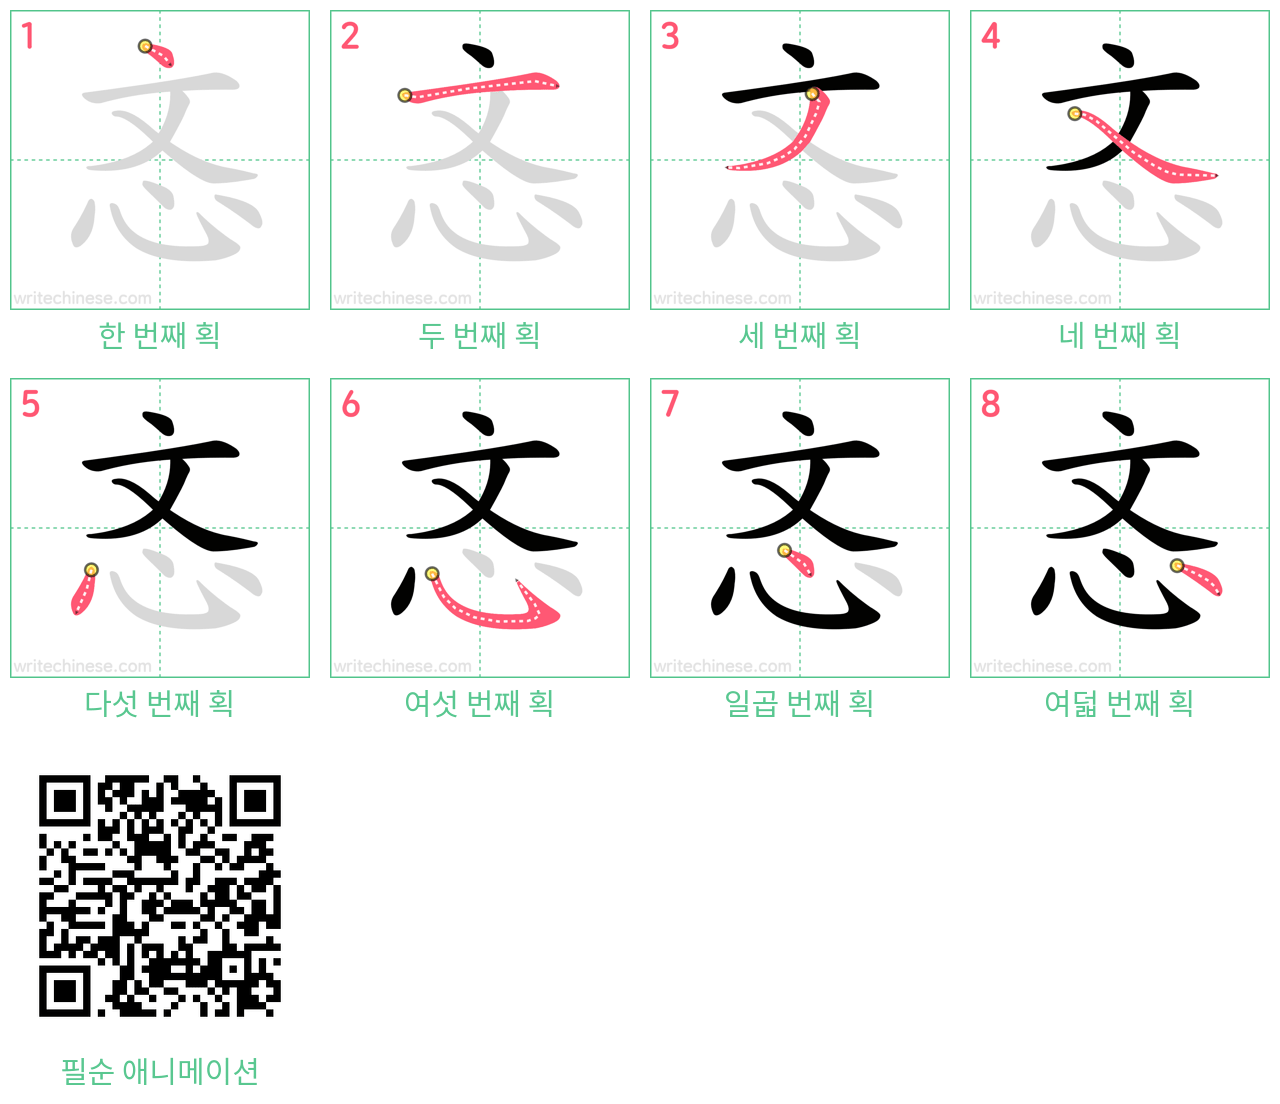 忞 step-by-step stroke order diagrams